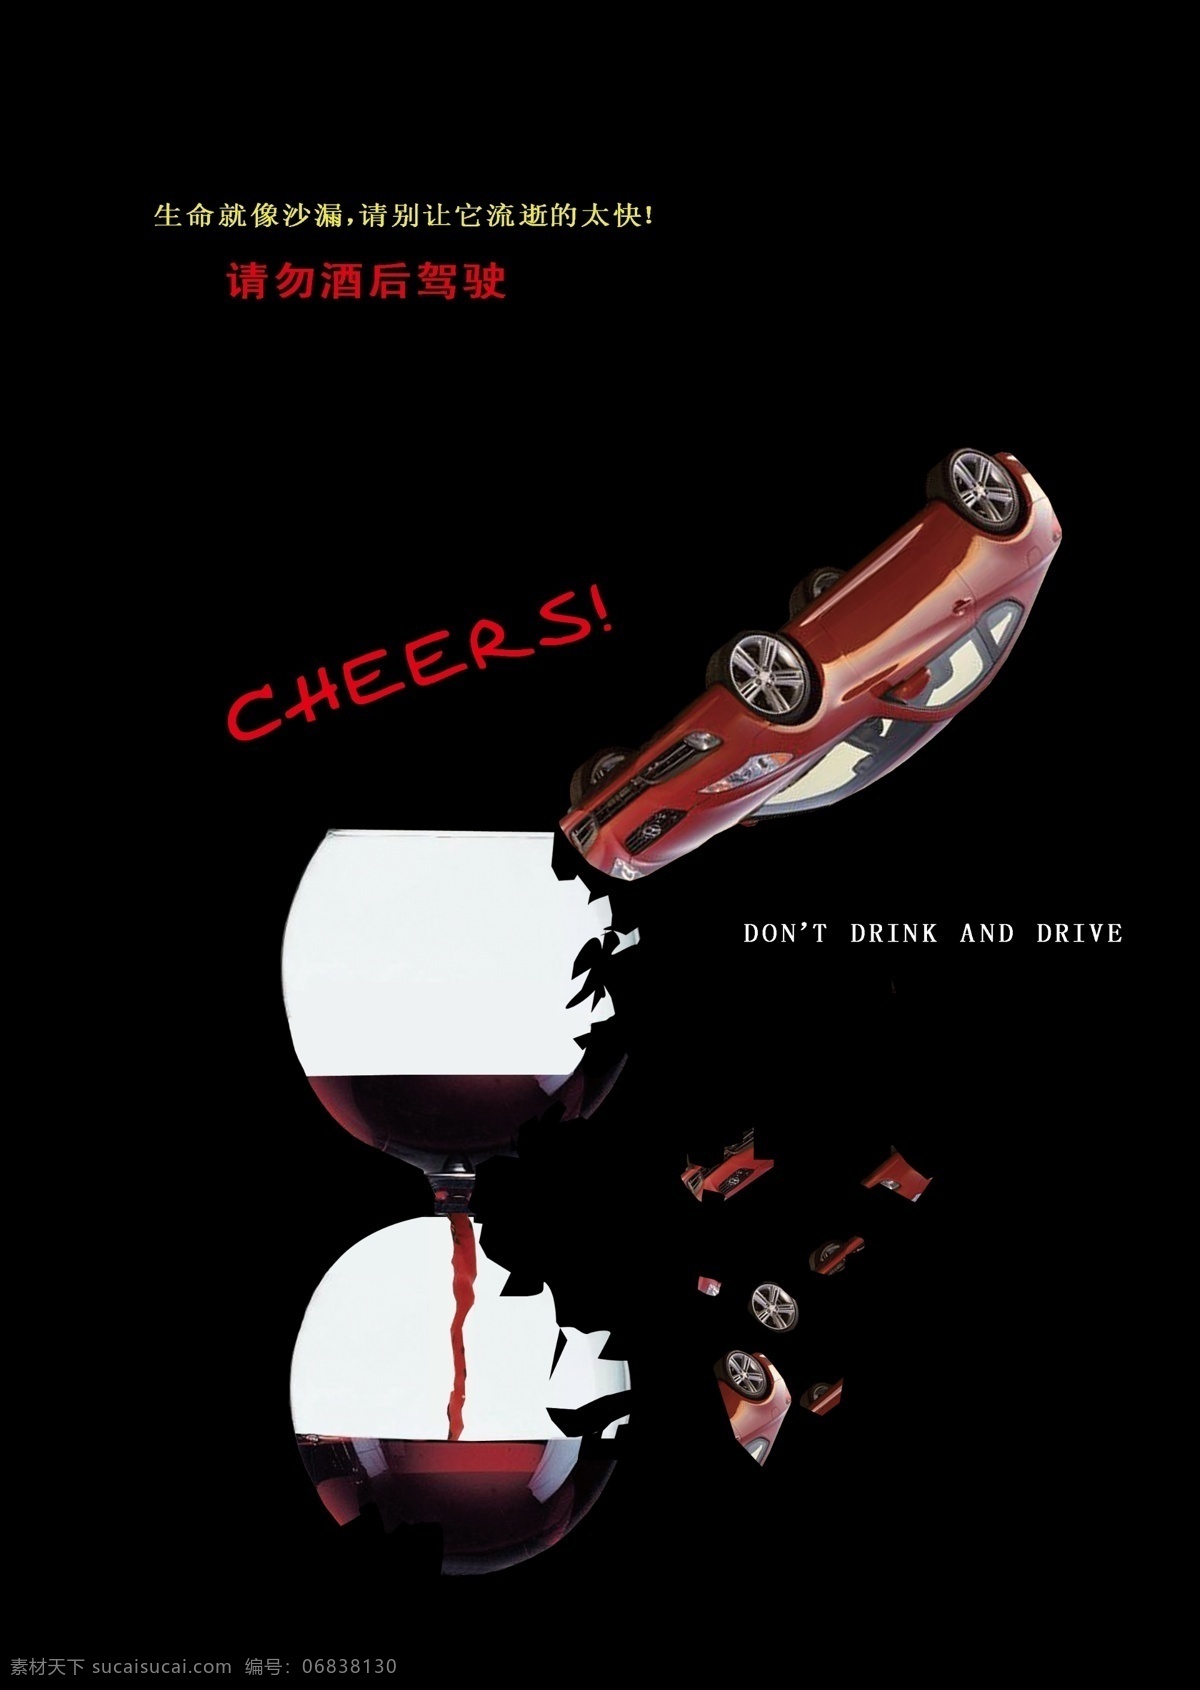 酒后 驾驶 公益 海报 广告设计模板 酒杯 碰撞 汽车 沙漏 源文件 环保公益海报